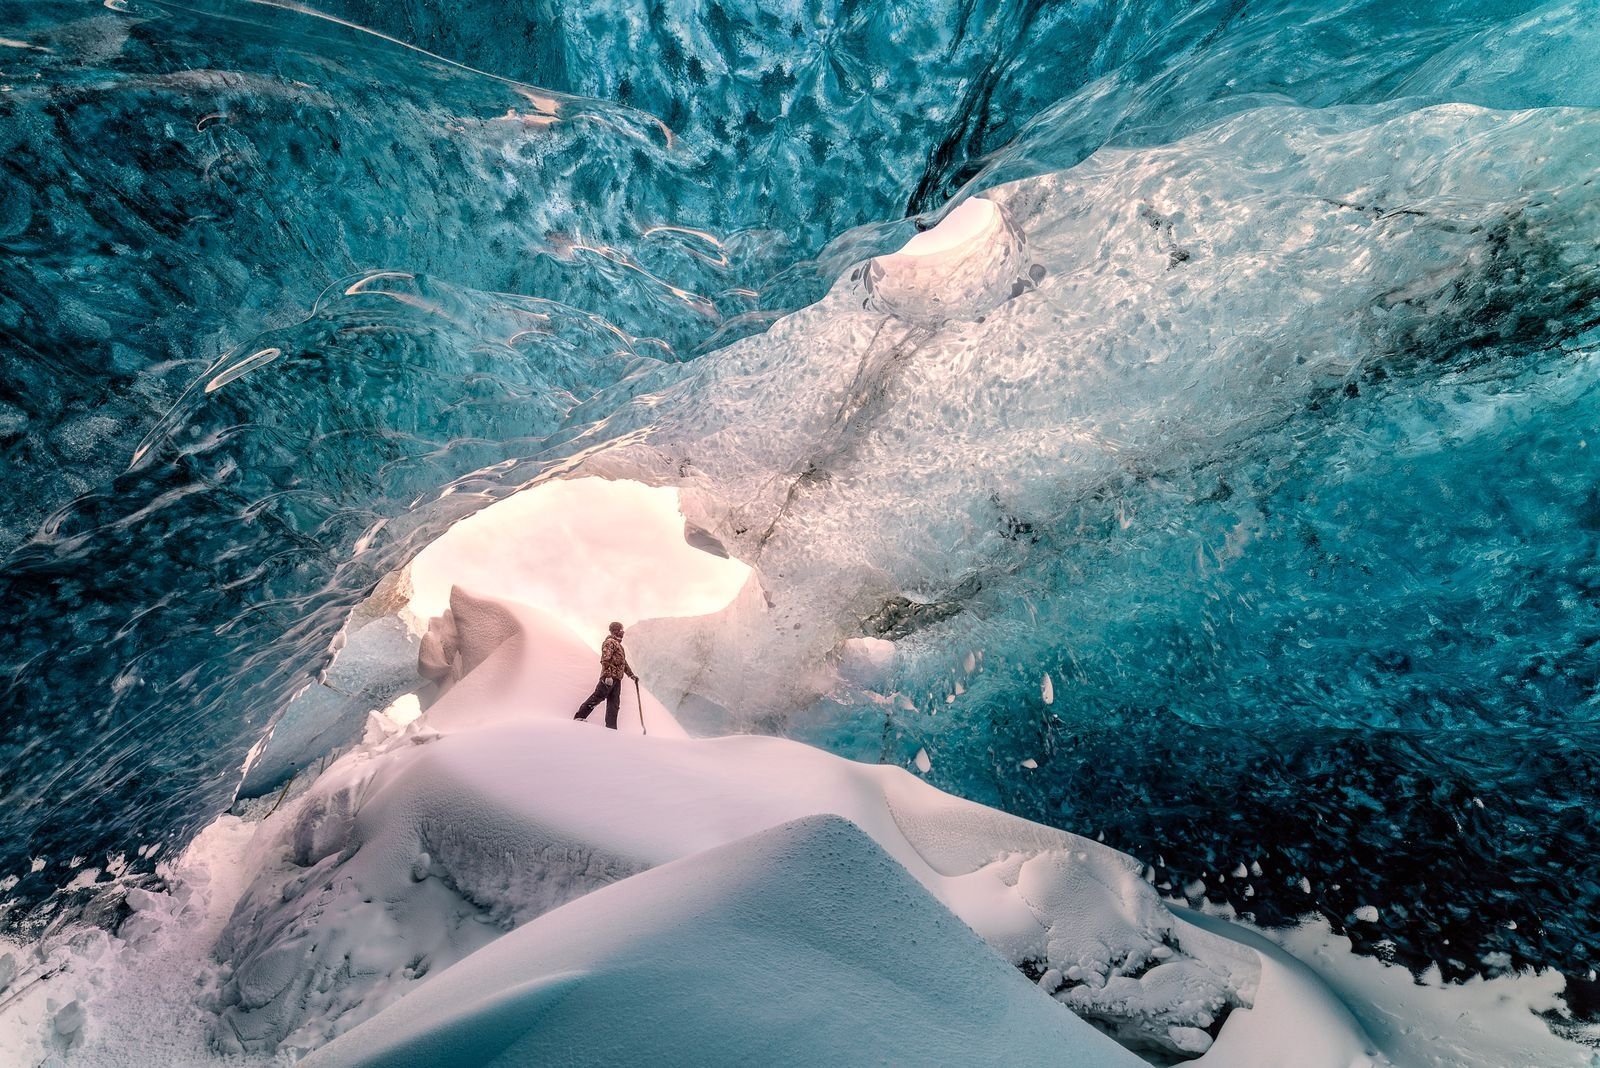 冰洞探索 攝影：Raffaele Cabras， 國家地理〈你的觀點〉